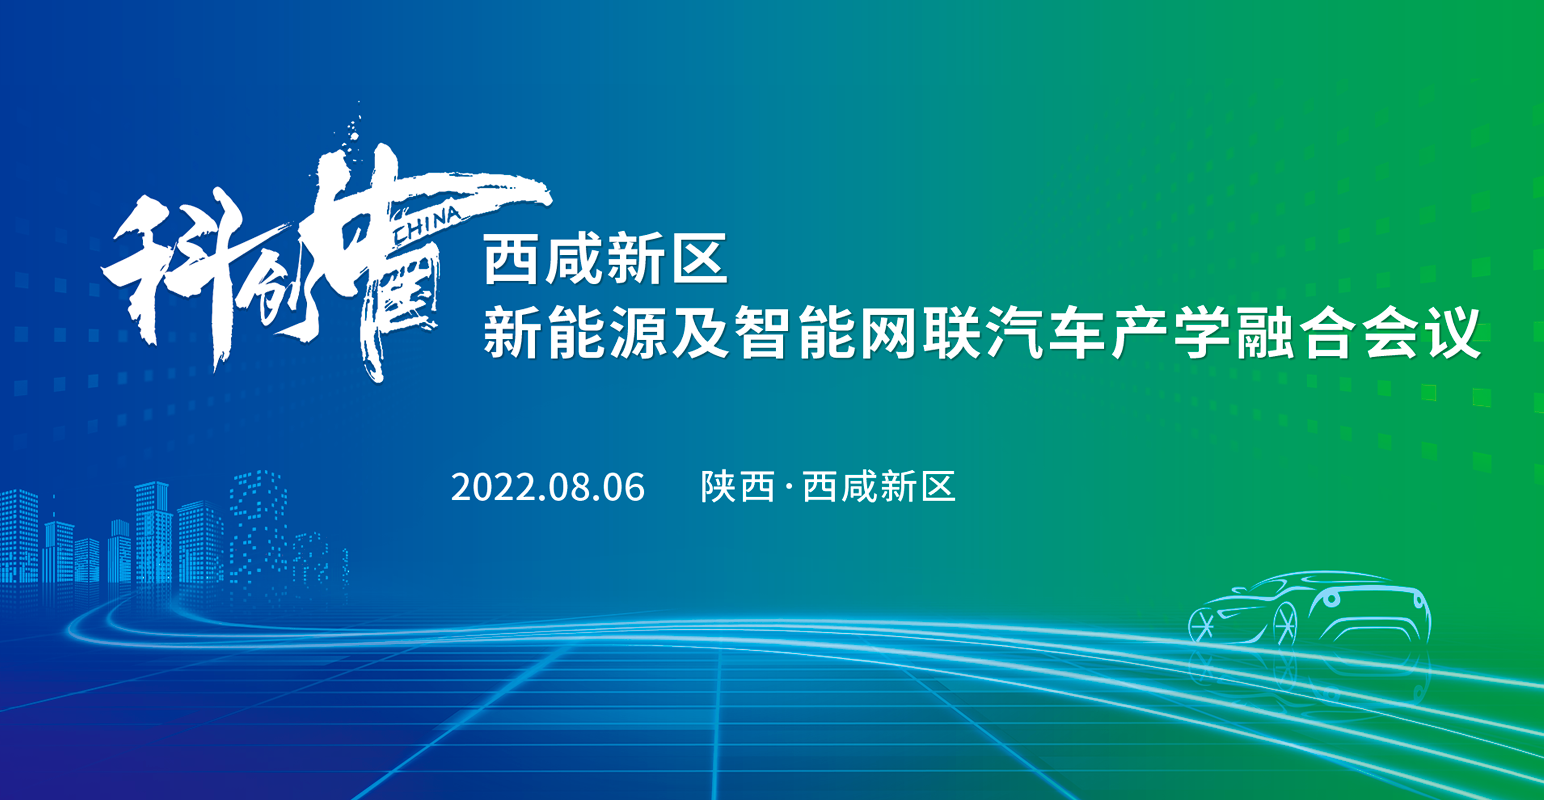 “科创中国”西咸新区新能源及智能网联汽车产学融合会议